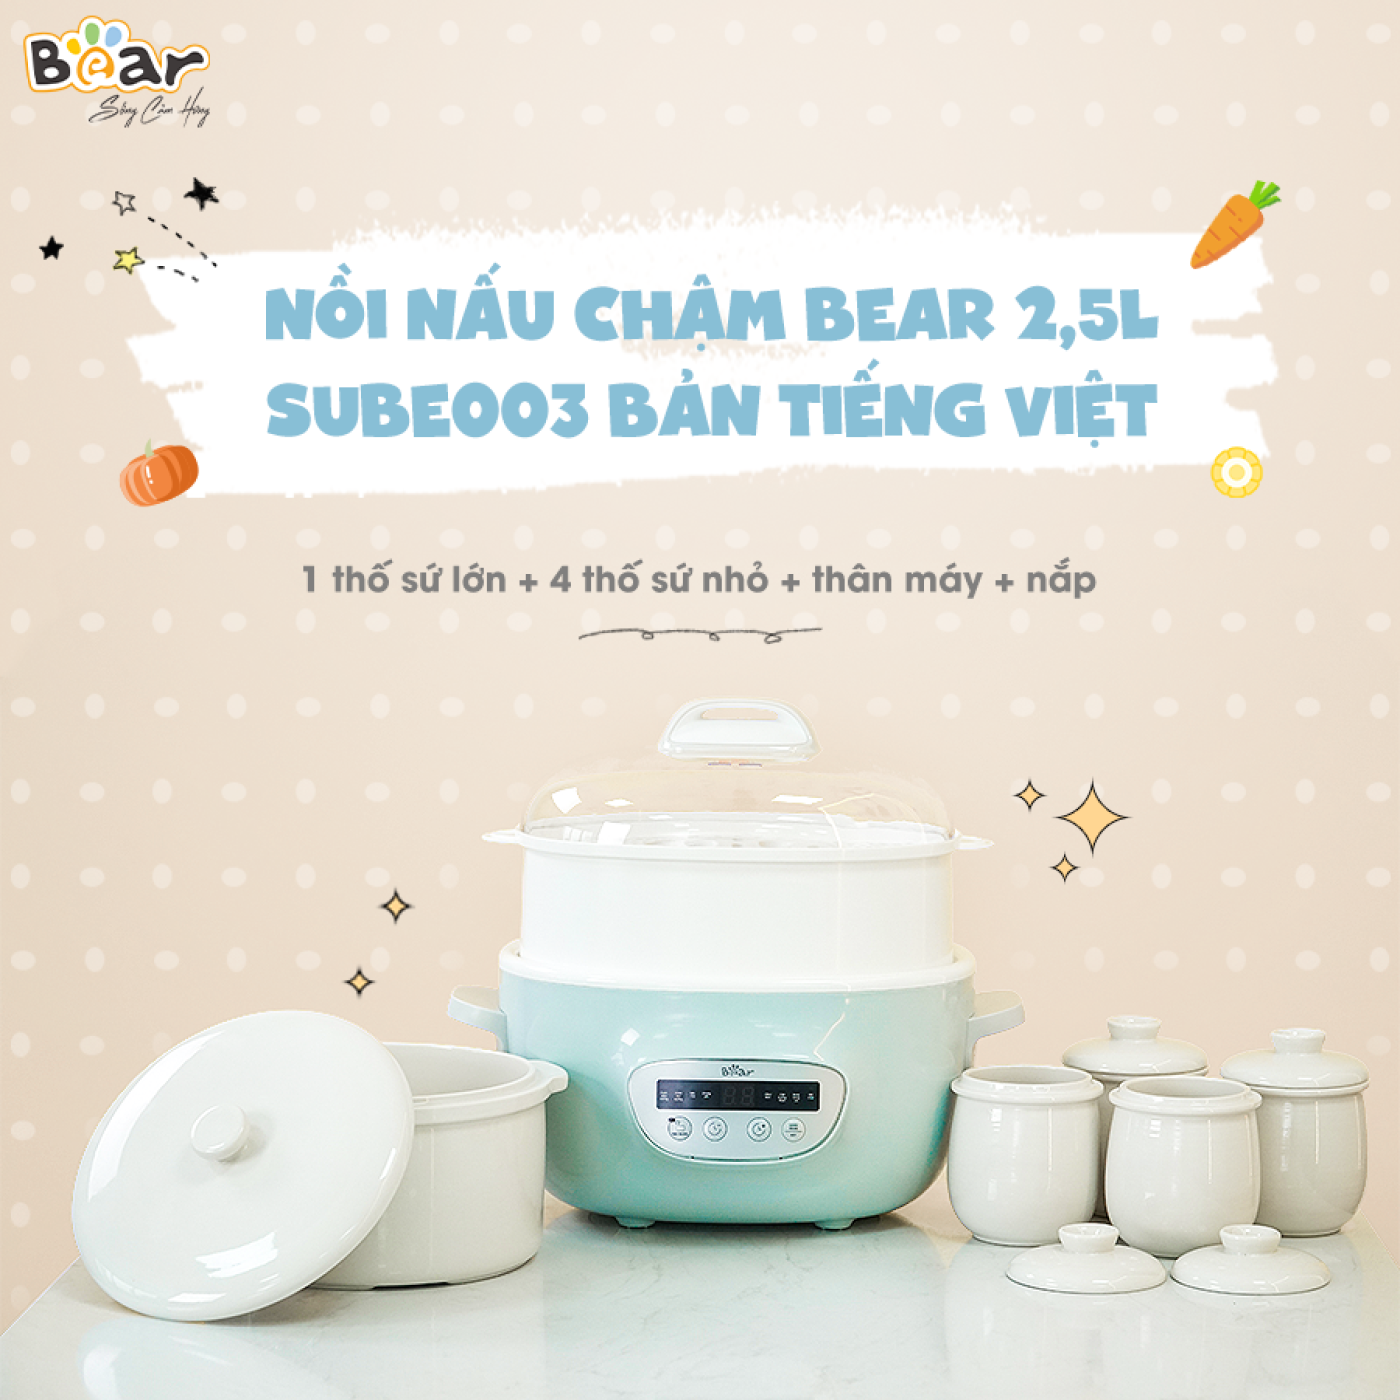 Nồi Nấu Chậm 2,5L Bear Chính Hãng Đa Năng Nấu Cháo, Chưng Yến Bản Tiếng Việt